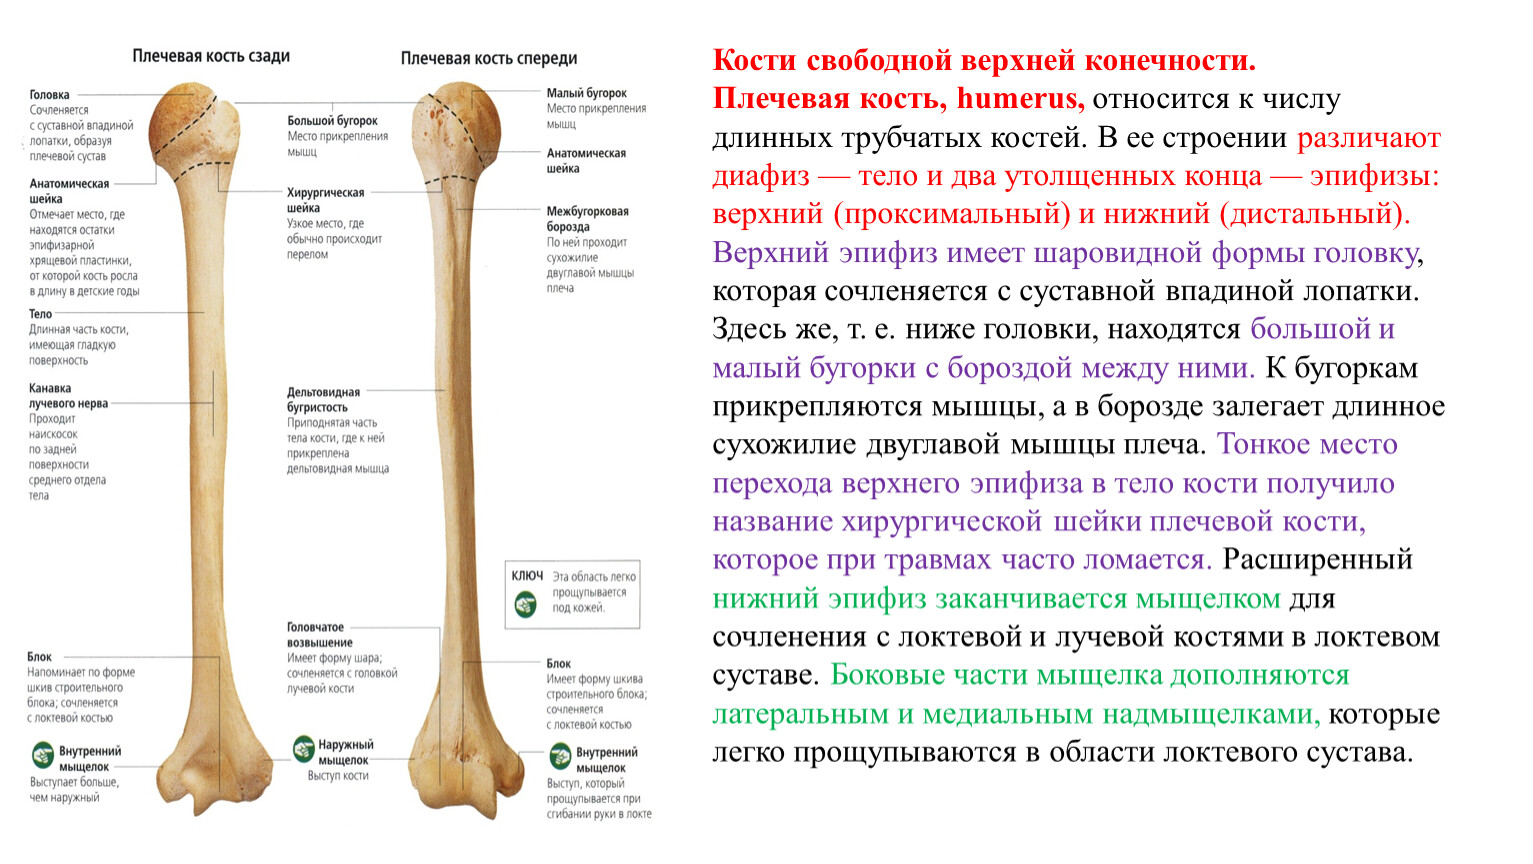 Анатомия дистального отдела плечевой кости